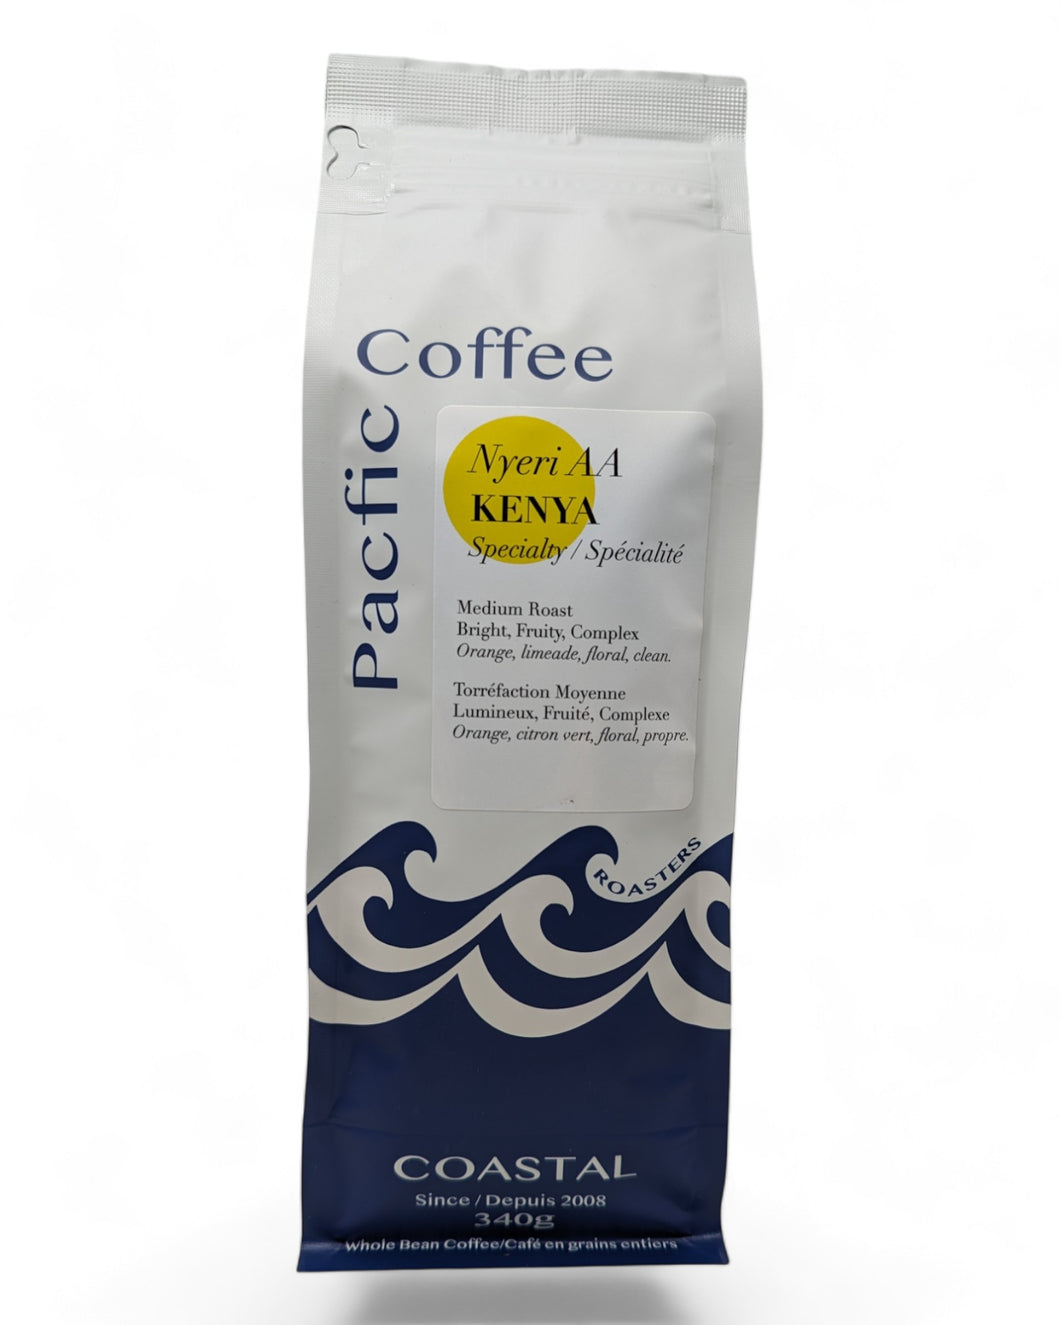 Nyeri AA Kenya Specialty Coffee